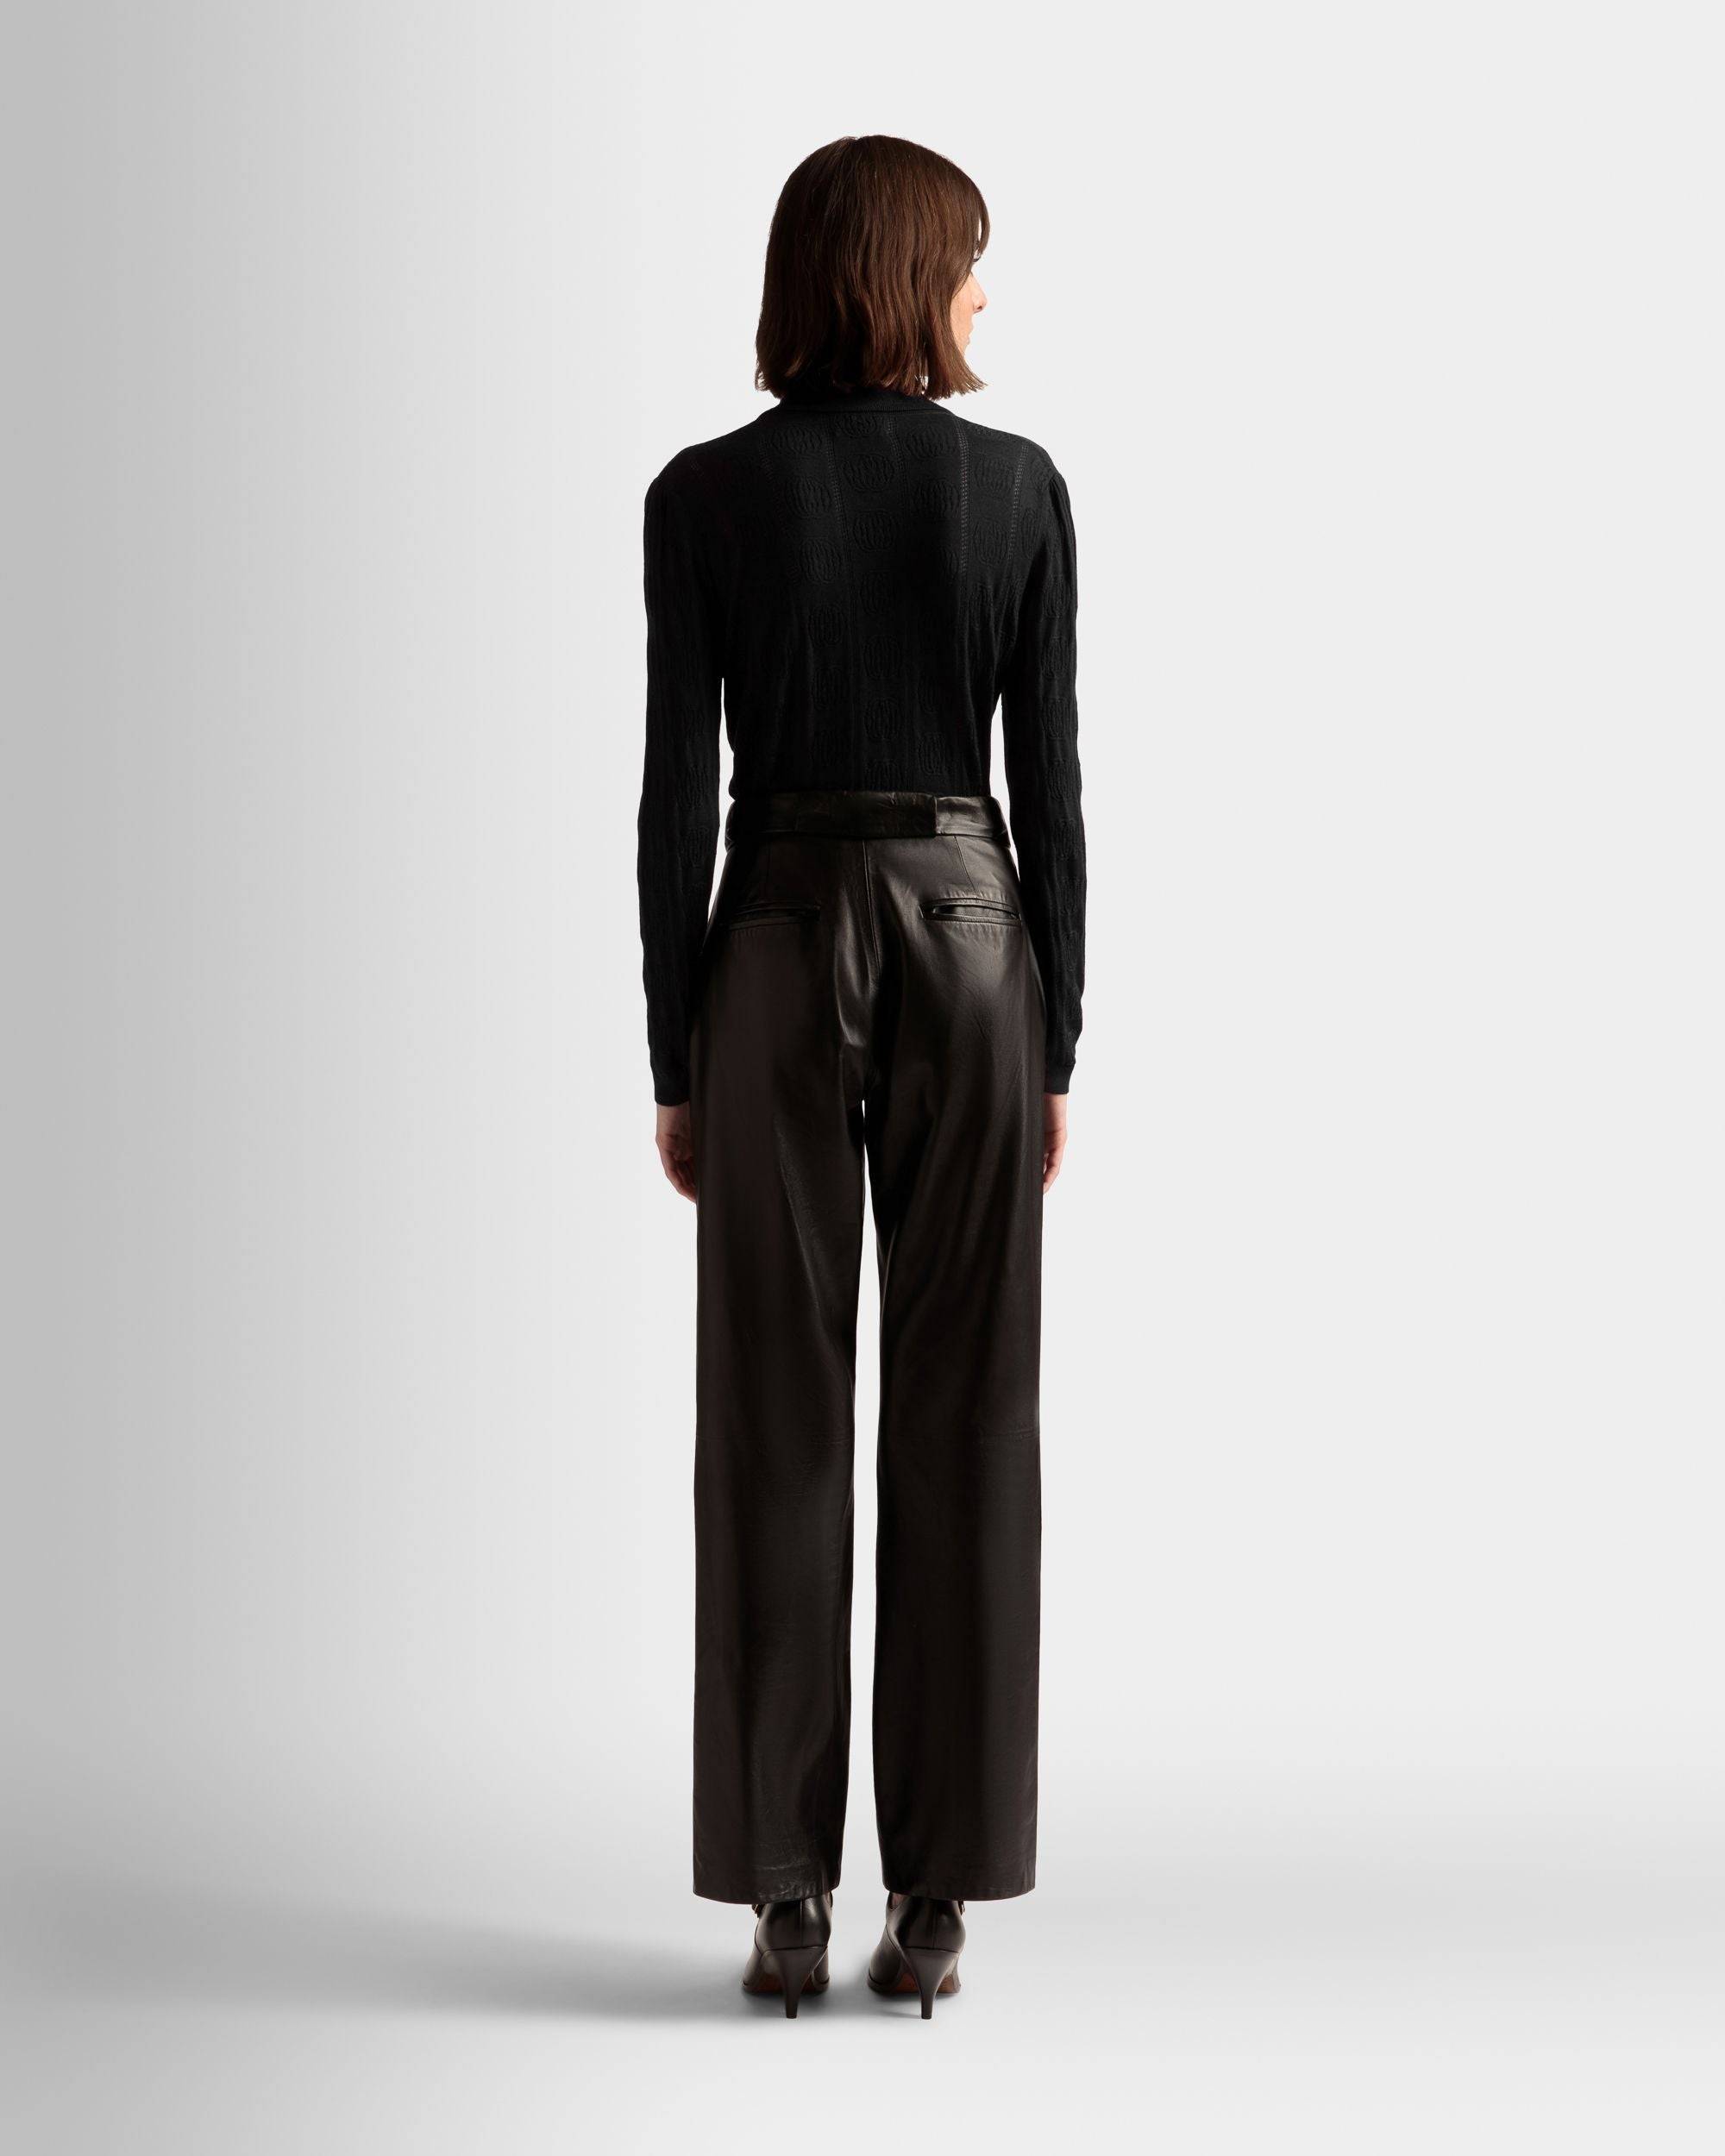 Langarm-Poloshirt mit Strickdetail | Poloshirt für Damen | Schwarze Wolle | Bally | Model getragen Rückseite